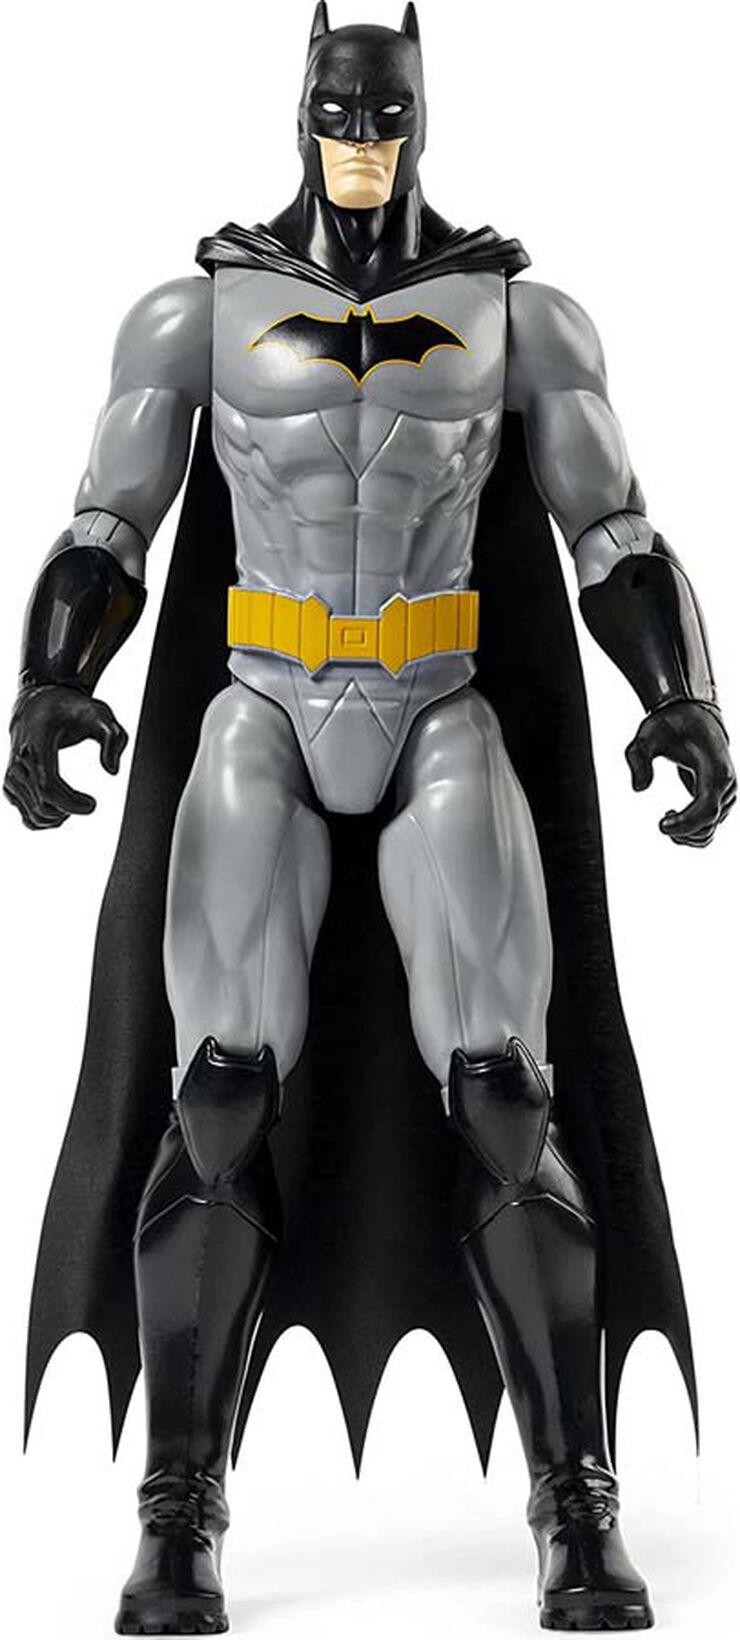 Figura Batman Rebirth 30 cm